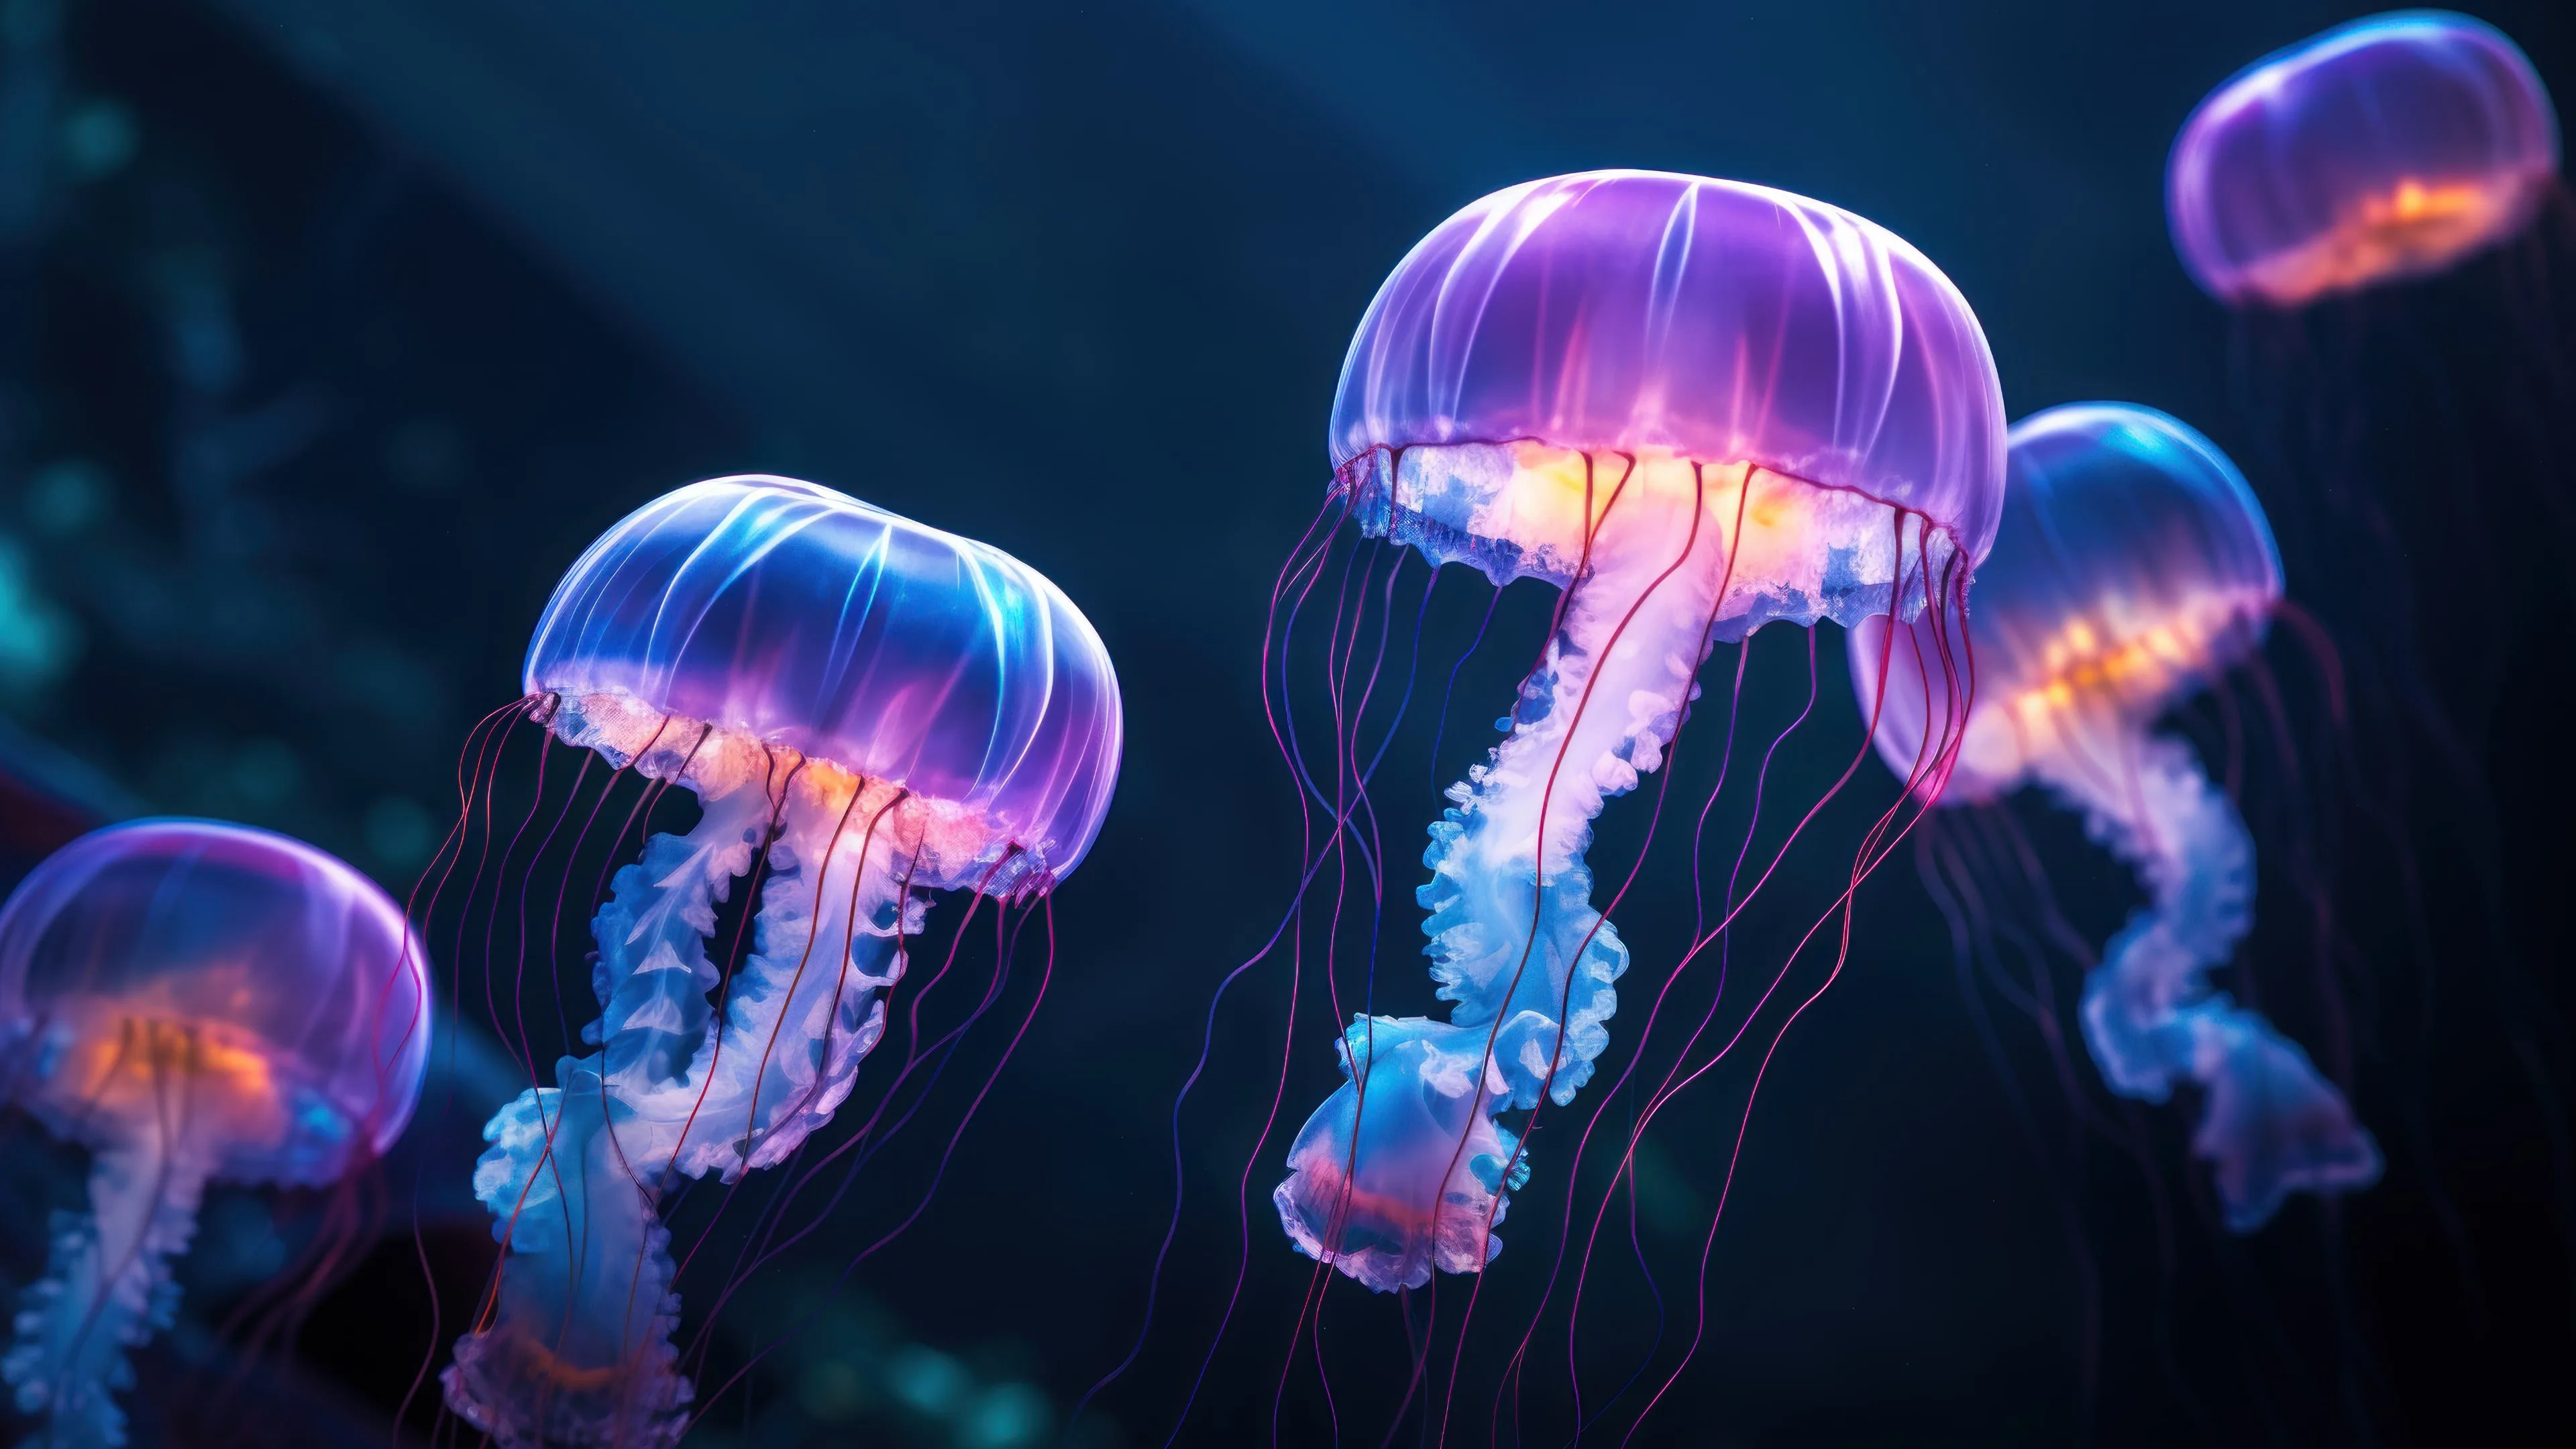 jellyfish live wallpaper 4k｜TikTok Search